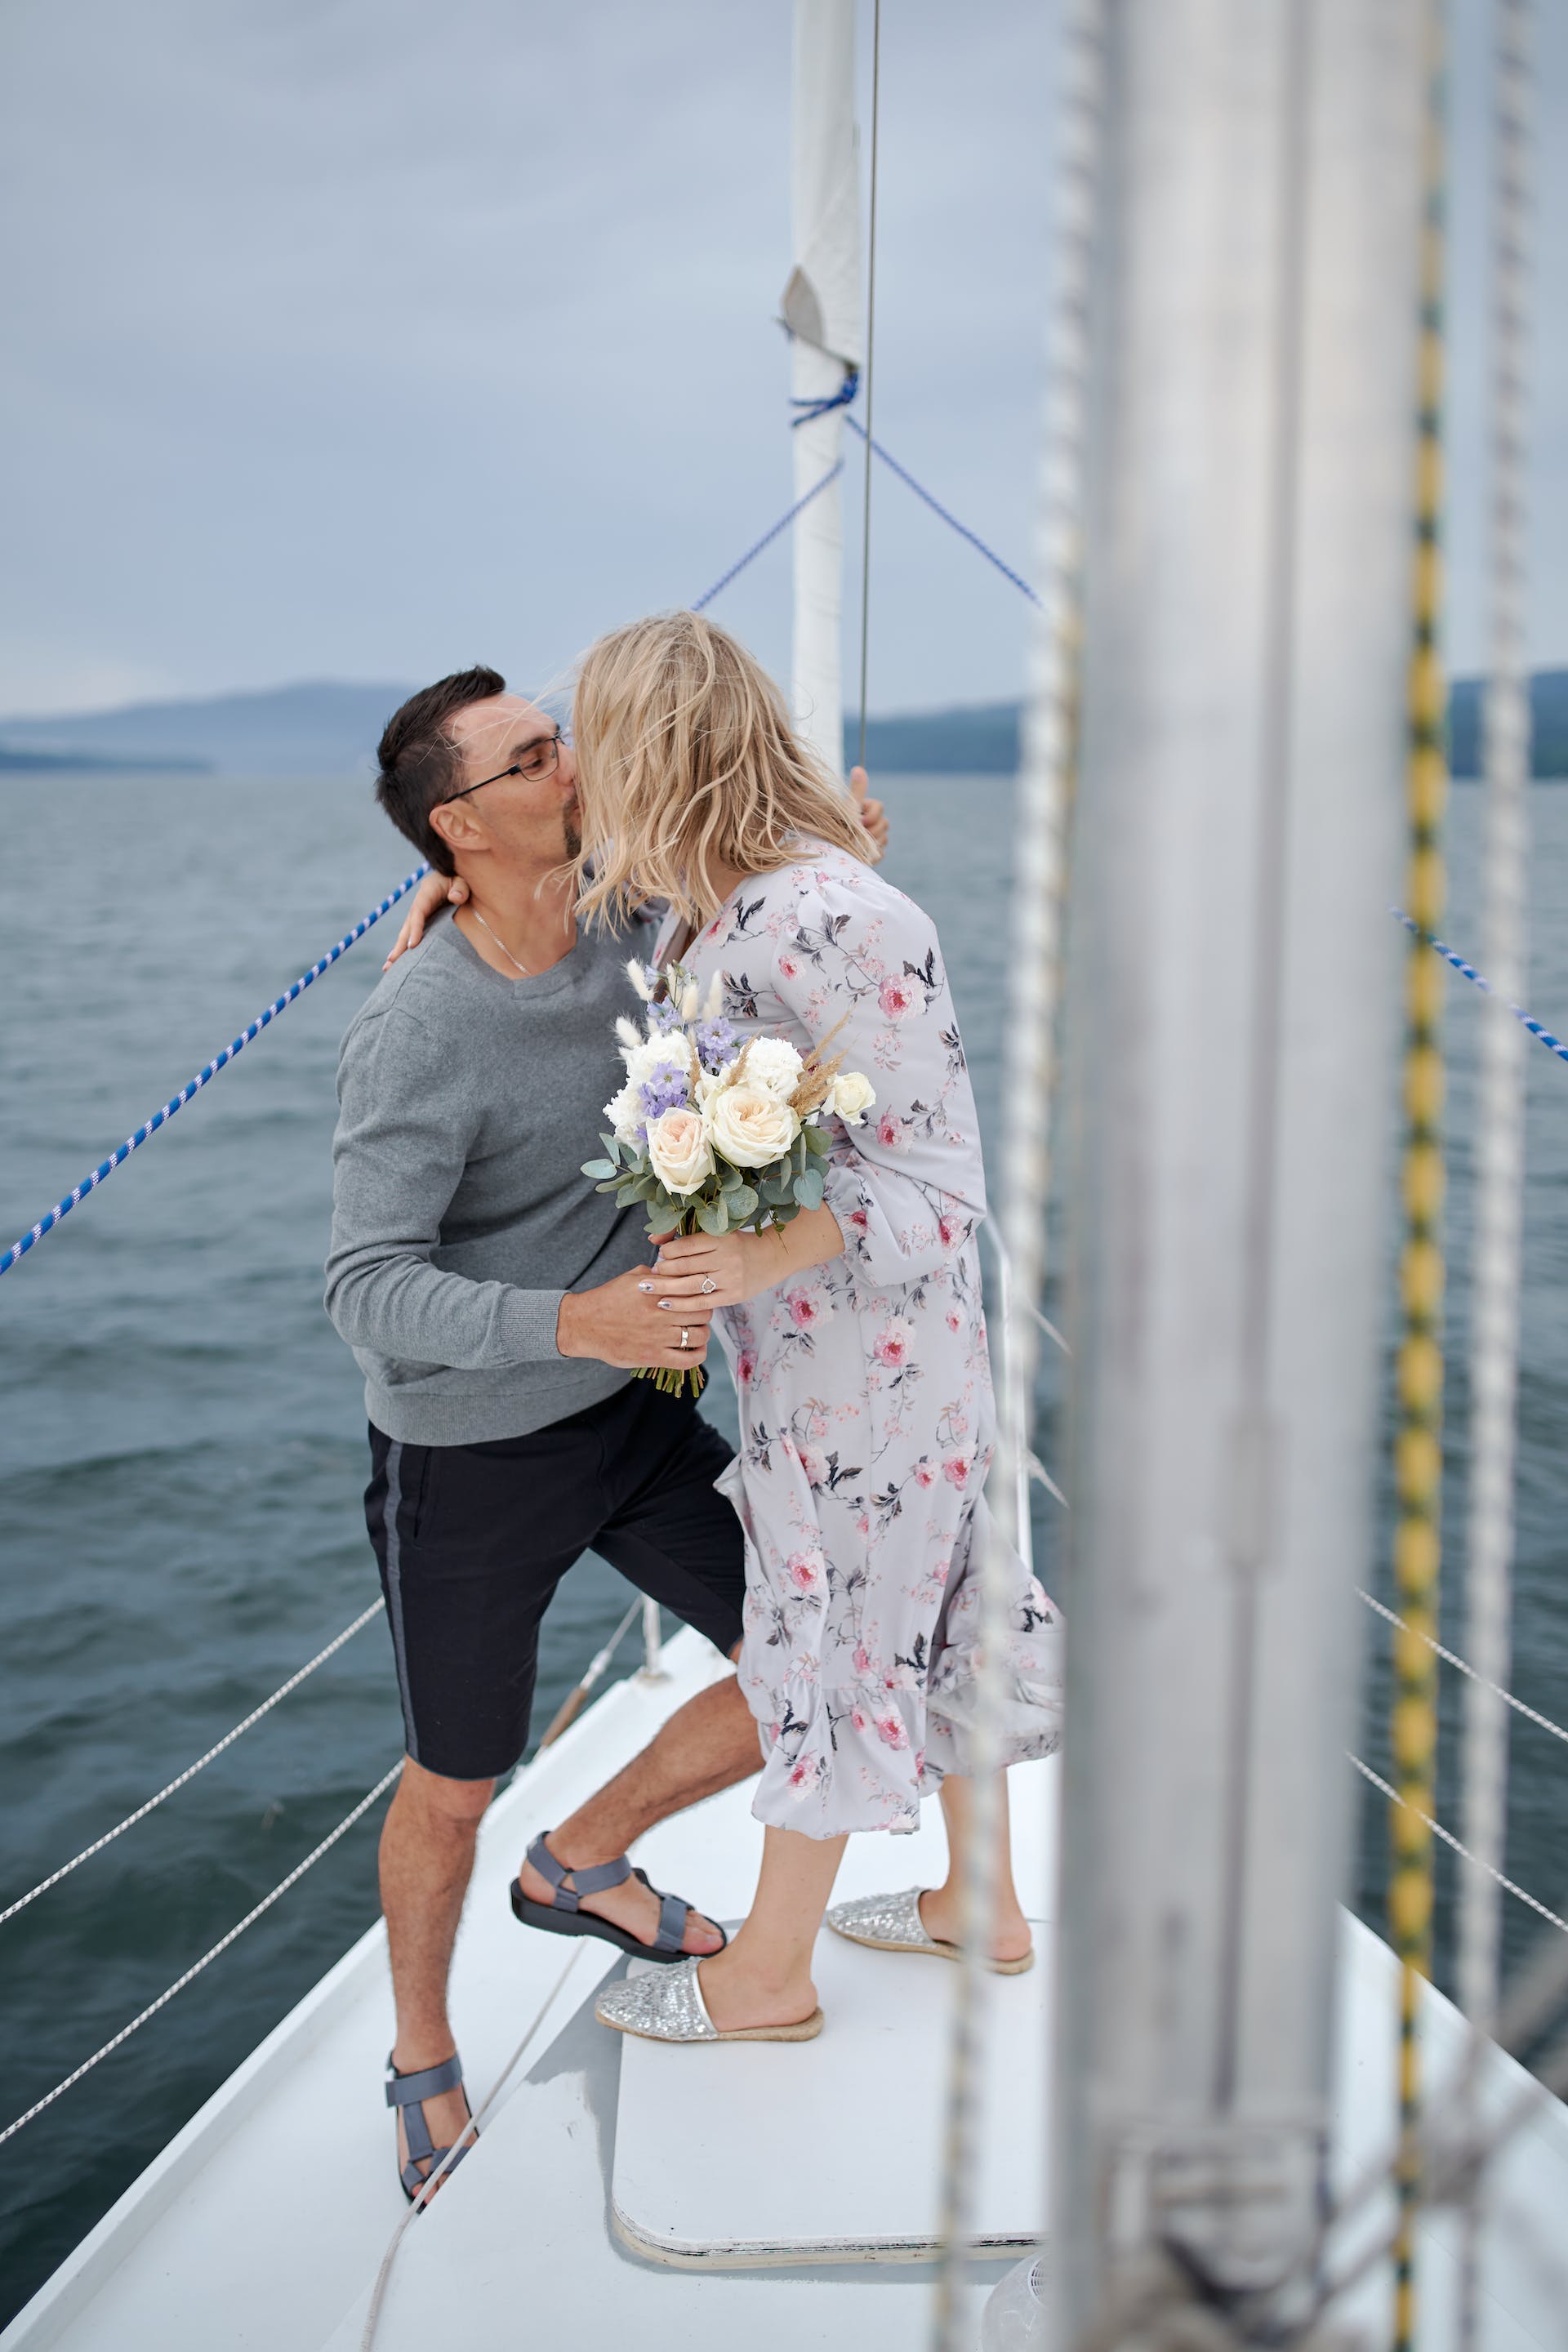 Femme embrassant son petit ami sur un yacht | Source : Pexels